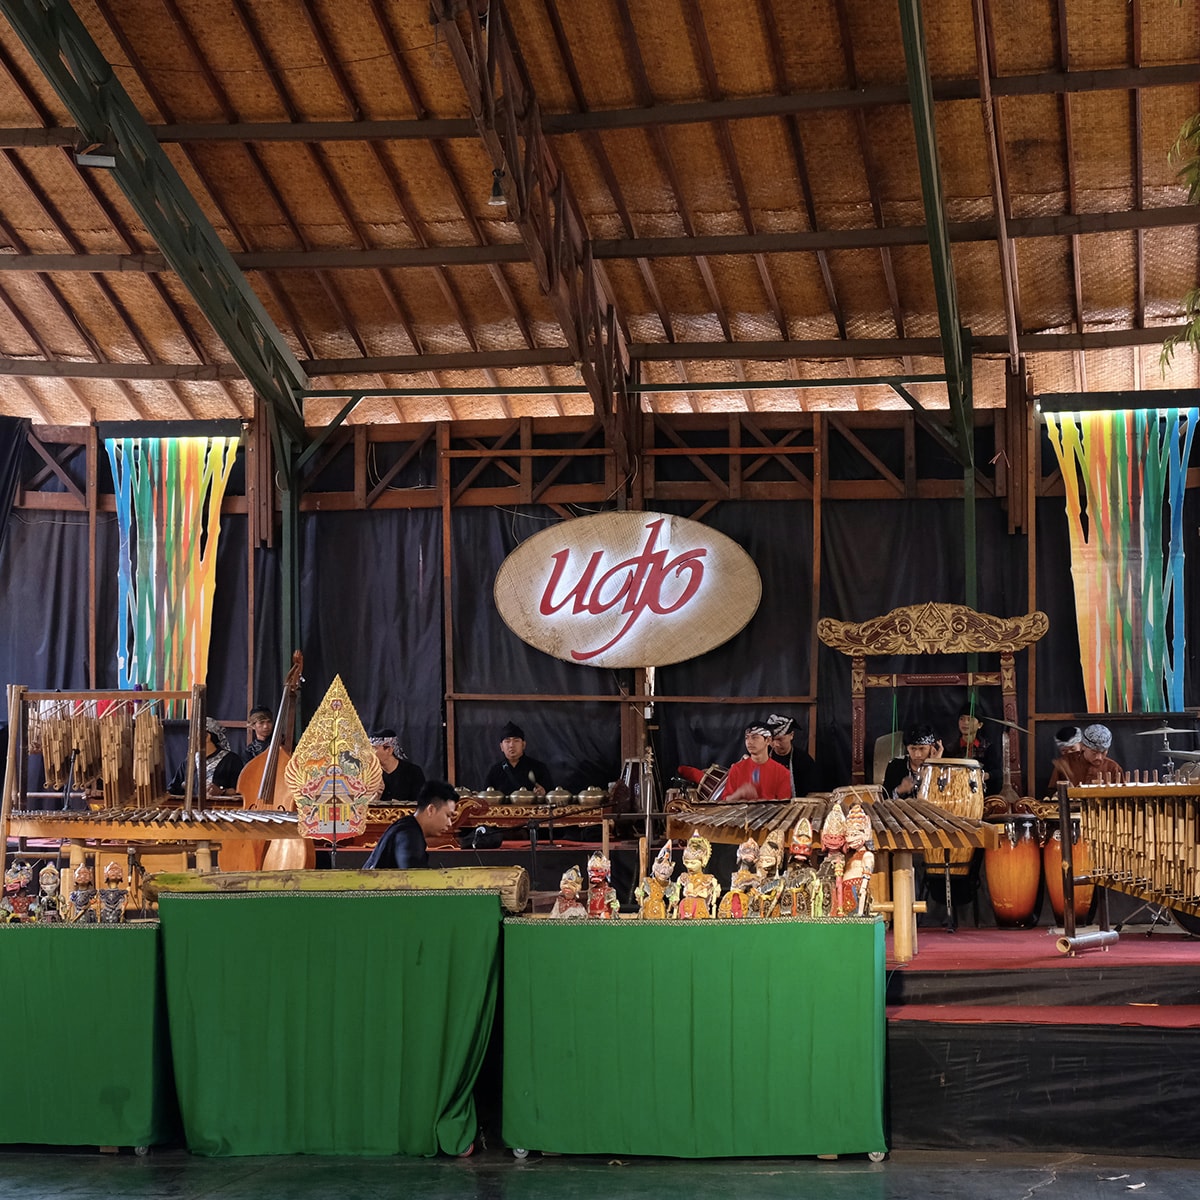 Saung angklung udjo tempat seni dan budaya Sunda berkembang